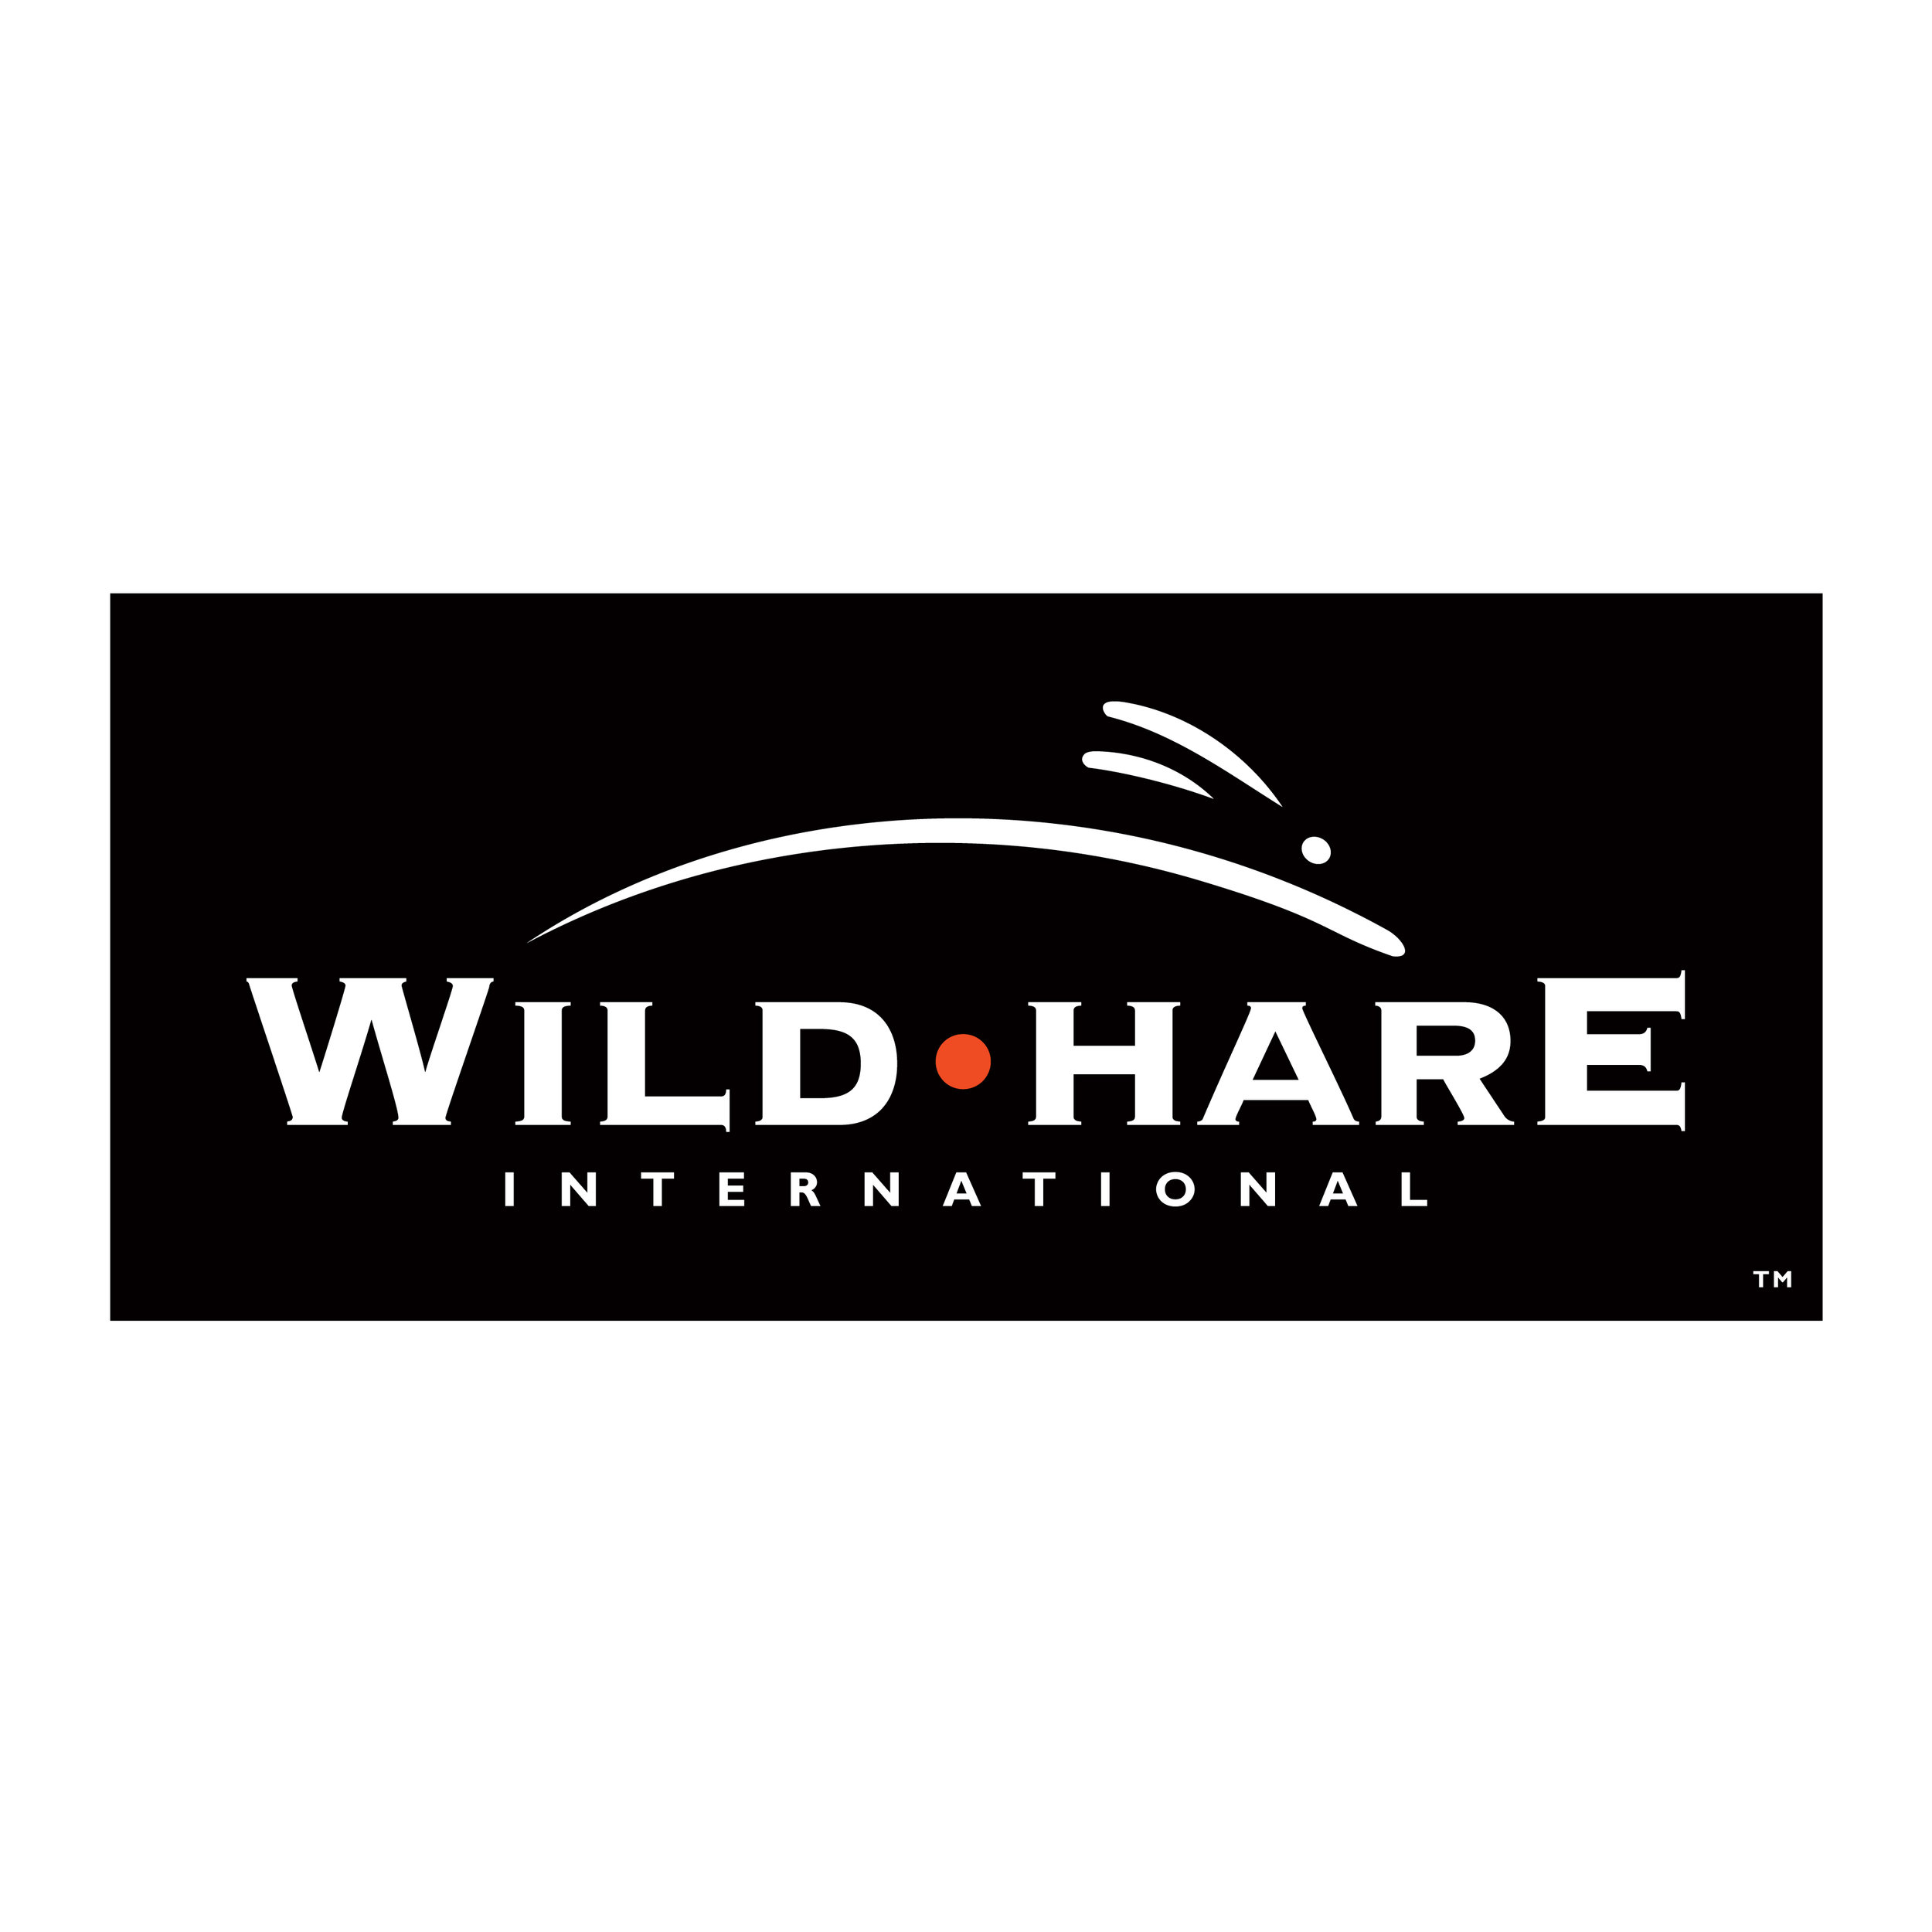  Wild•Hare International logo  Design by Chuck Mitchell 